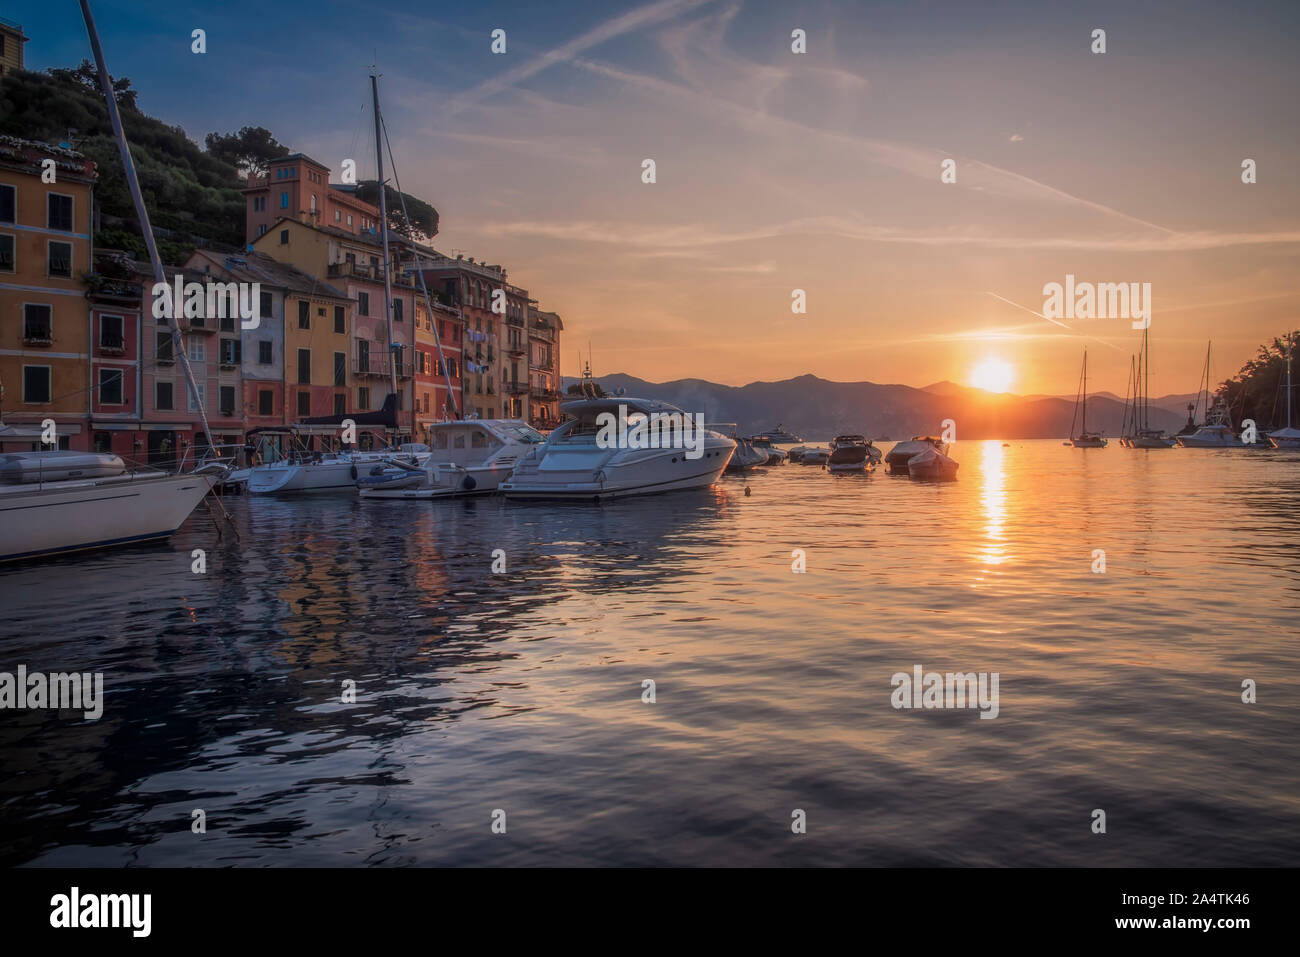 Bateaux amarrés dans la baie et beau lever de soleil à Portofino, Italie, vu de l'angle faible niveau d'eau avec le soleil se reflétant dans l'eau calme Banque D'Images